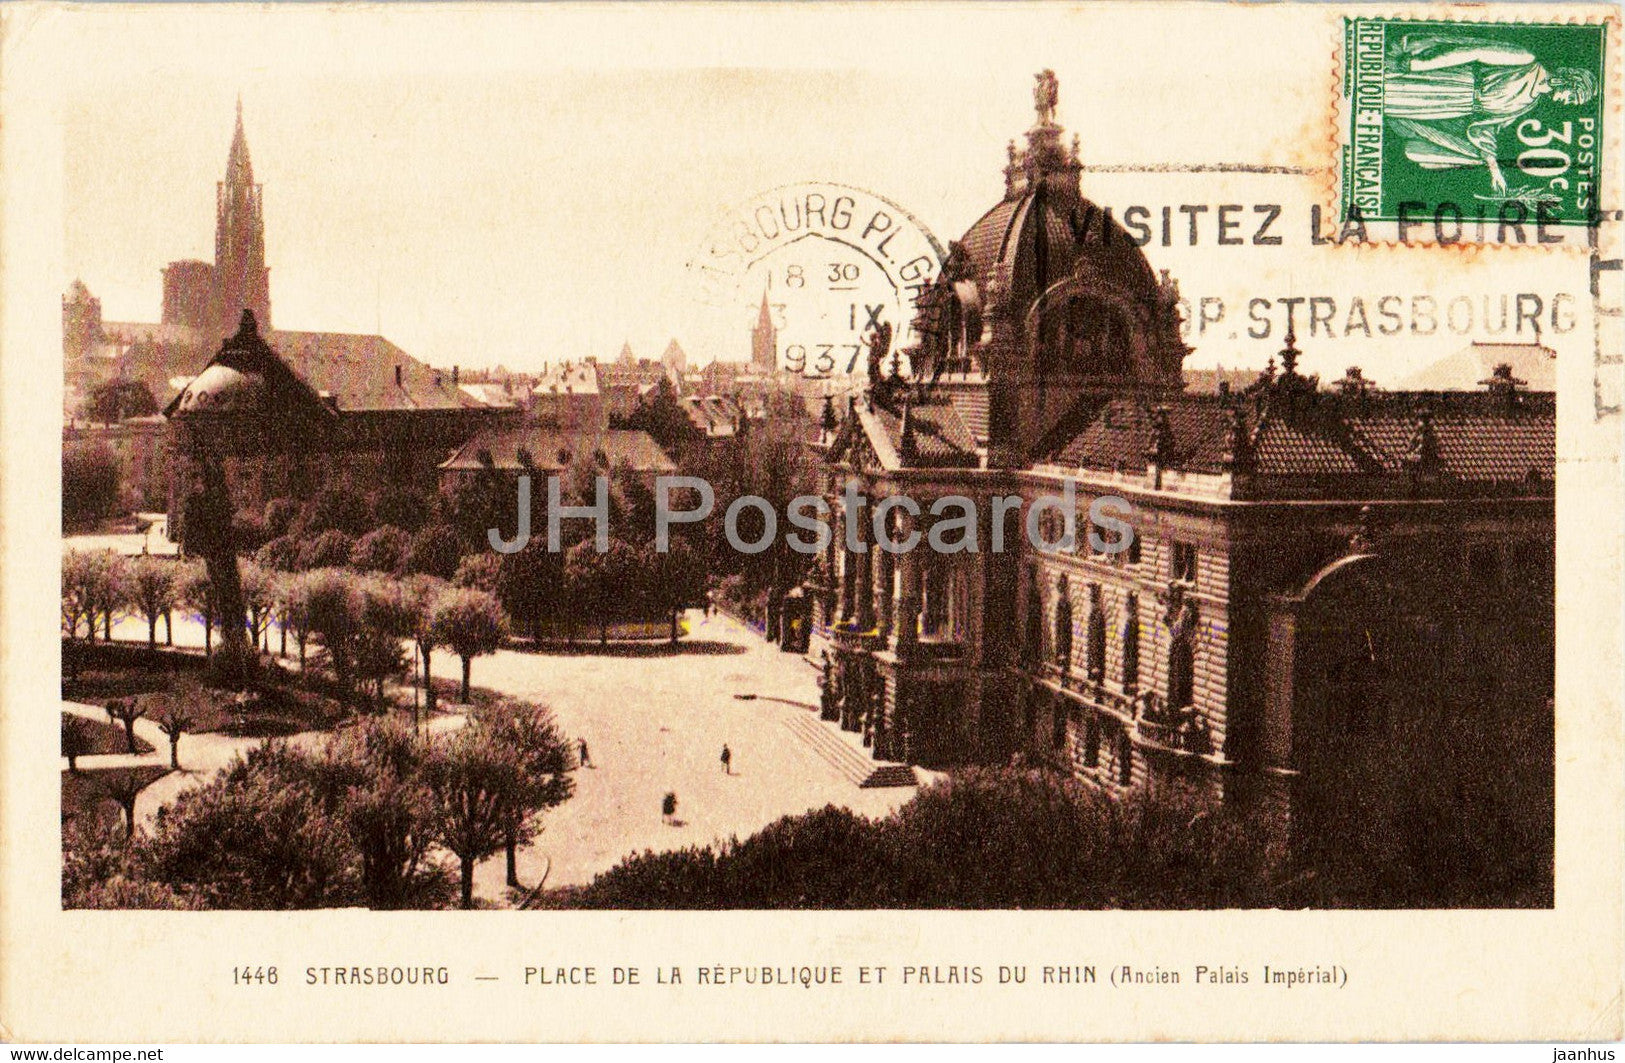 Strassburg i E - Strasbourg - Place de la Republique et Palais du Rhin - 1446 - old postcard - 1937 - France - used - JH Postcards